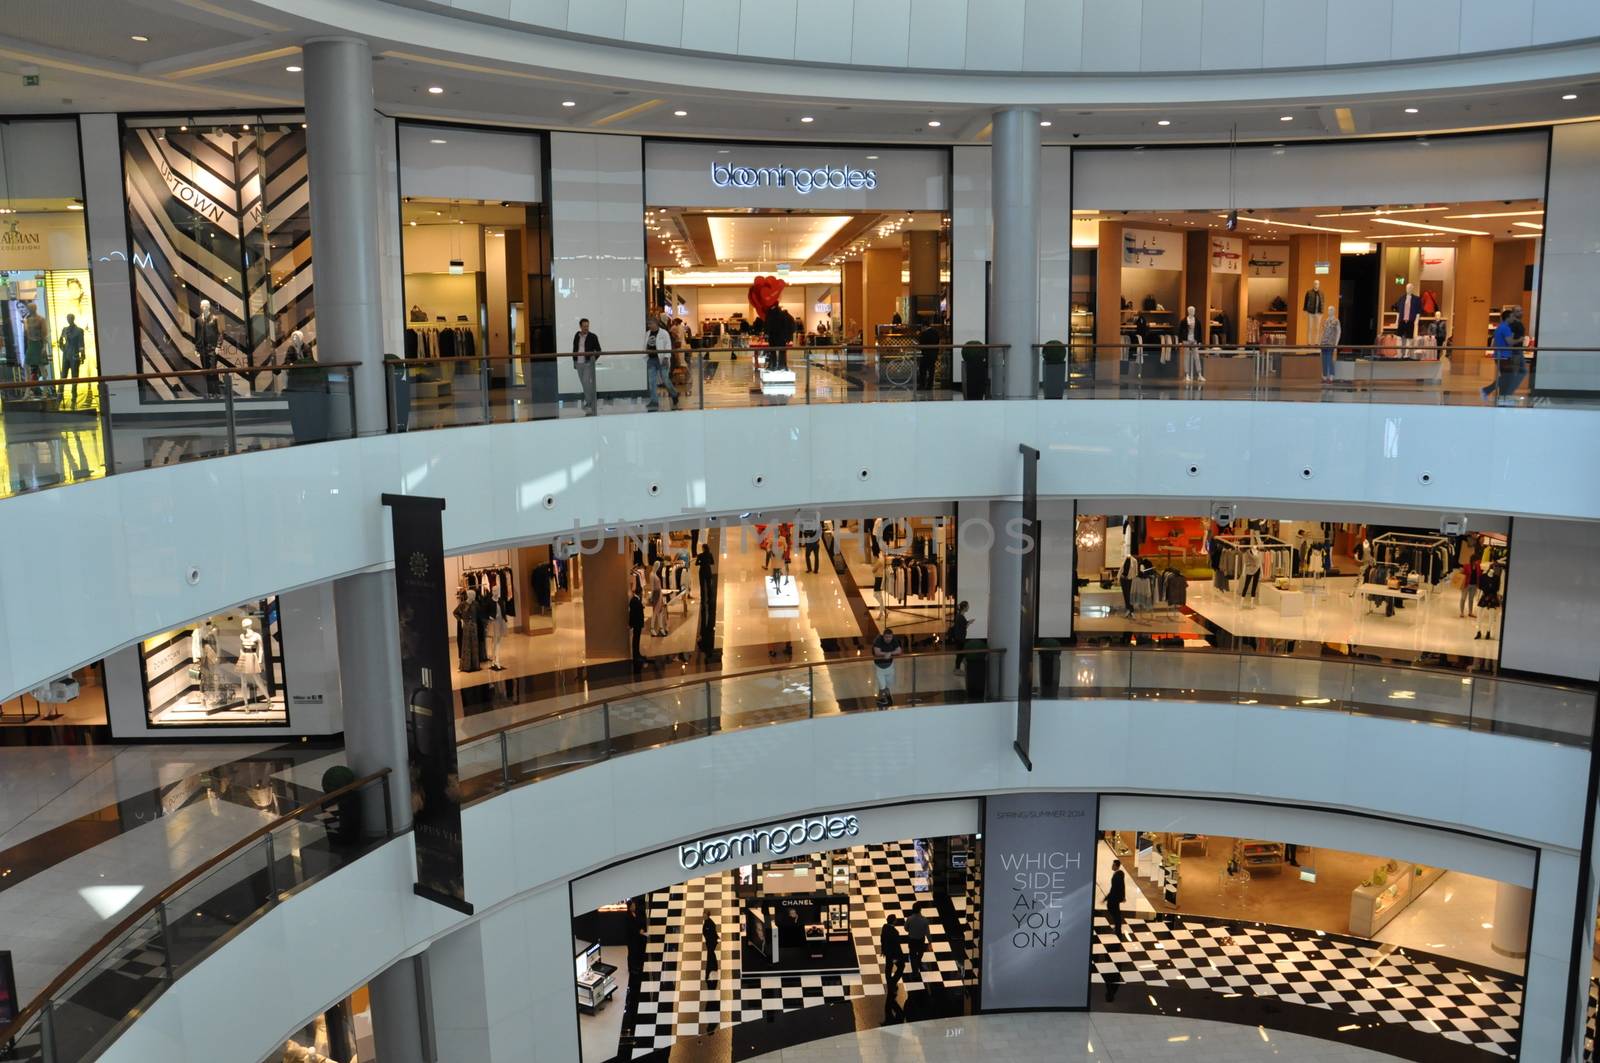 Bloomingdales at Dubai Mall in Dubai, UAE by sainaniritu